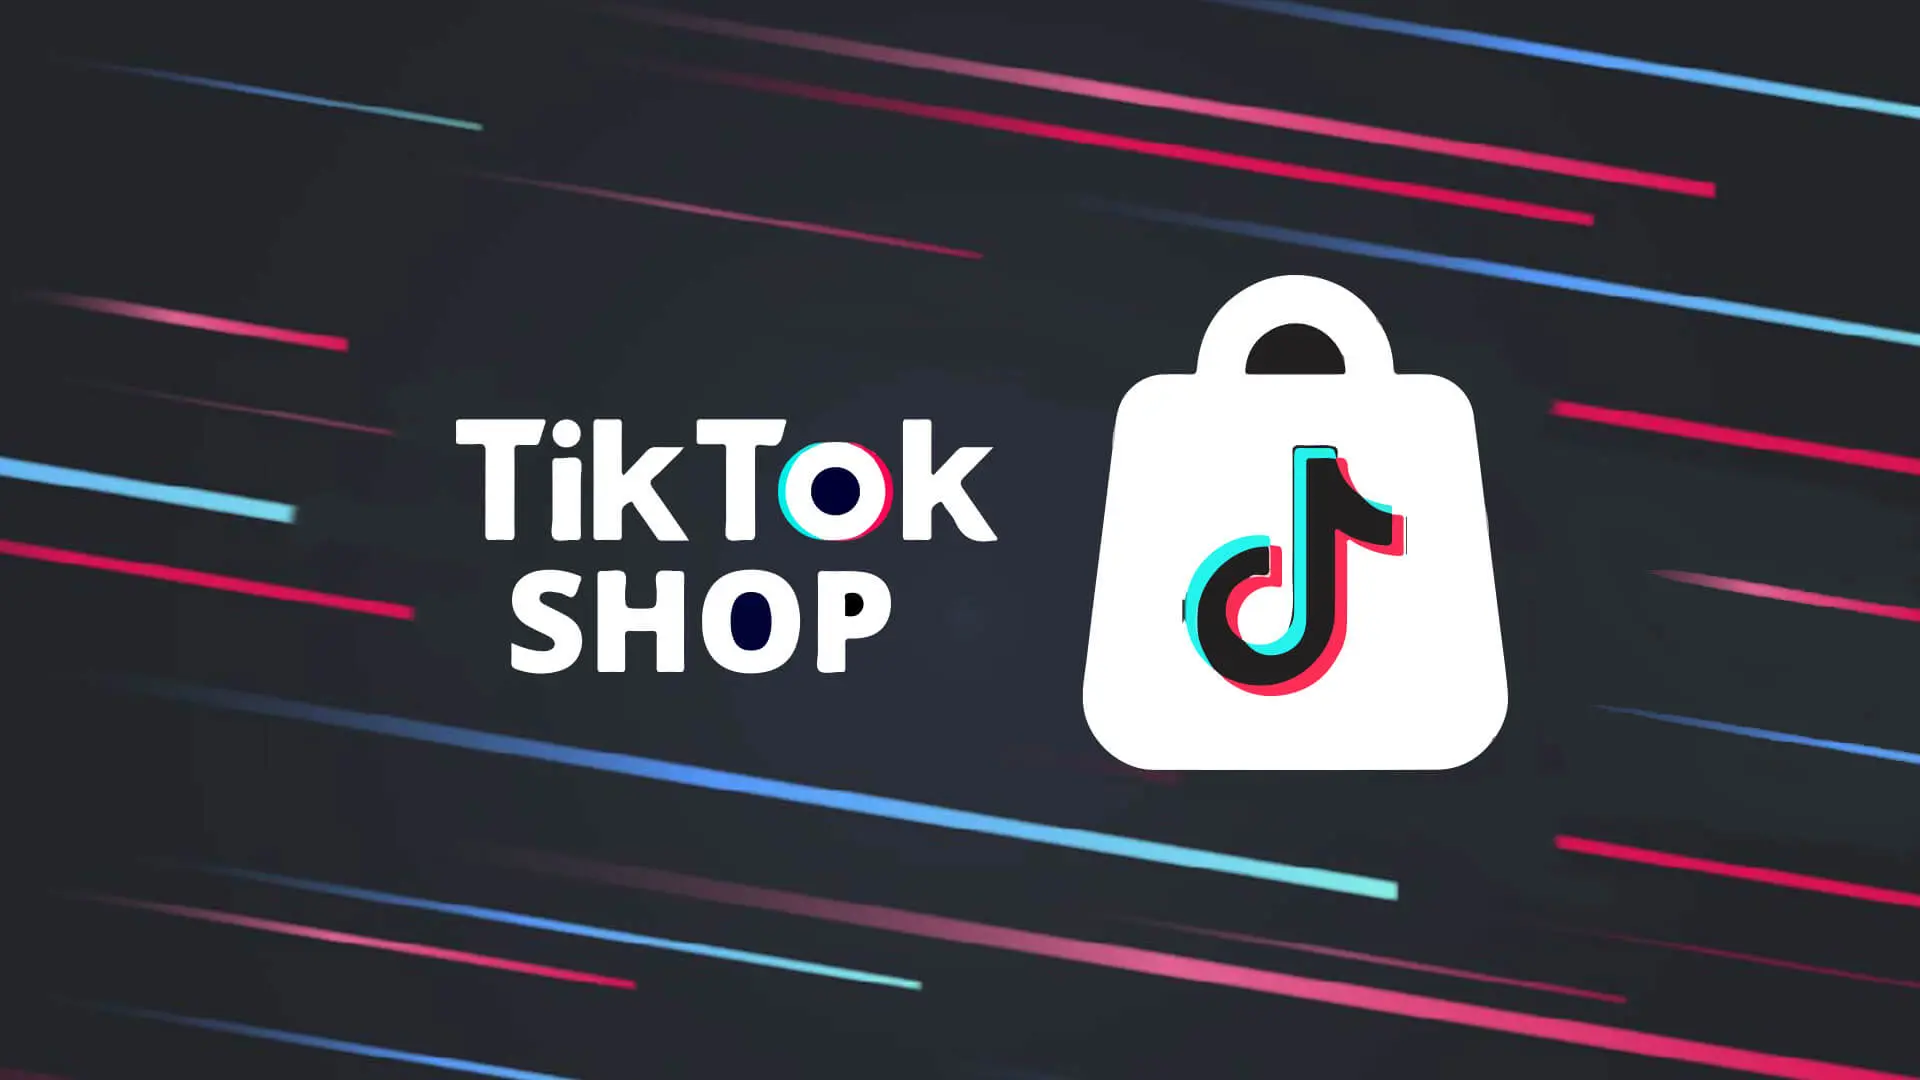 TikTok Shop запустил сервис по продаже подержанной одежды класса люкс